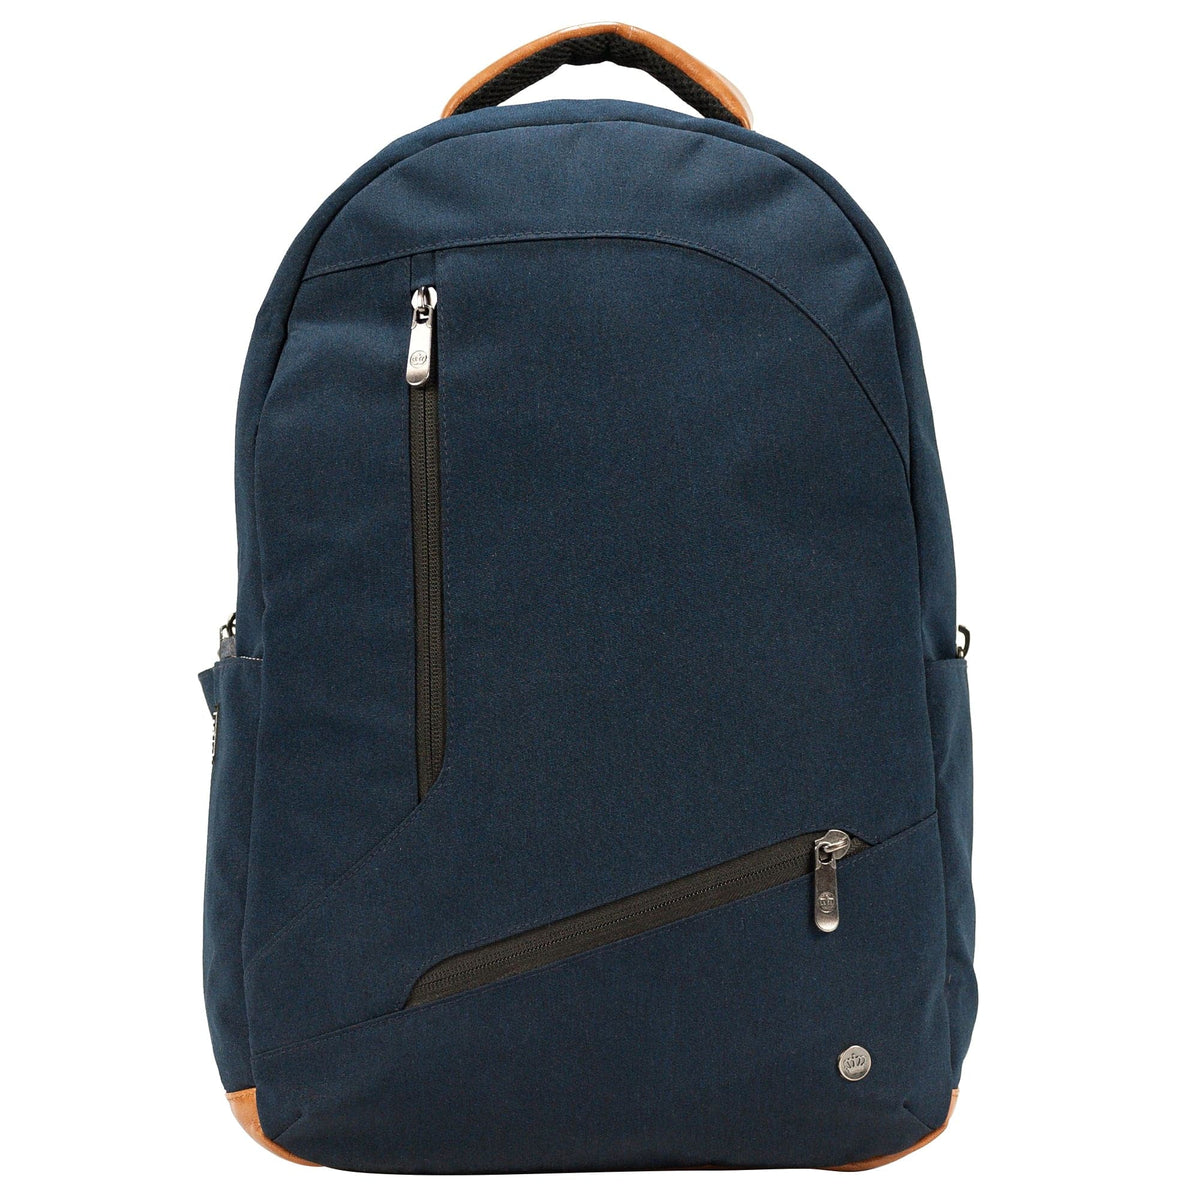 PKG Durham 15" Laptop Backpack